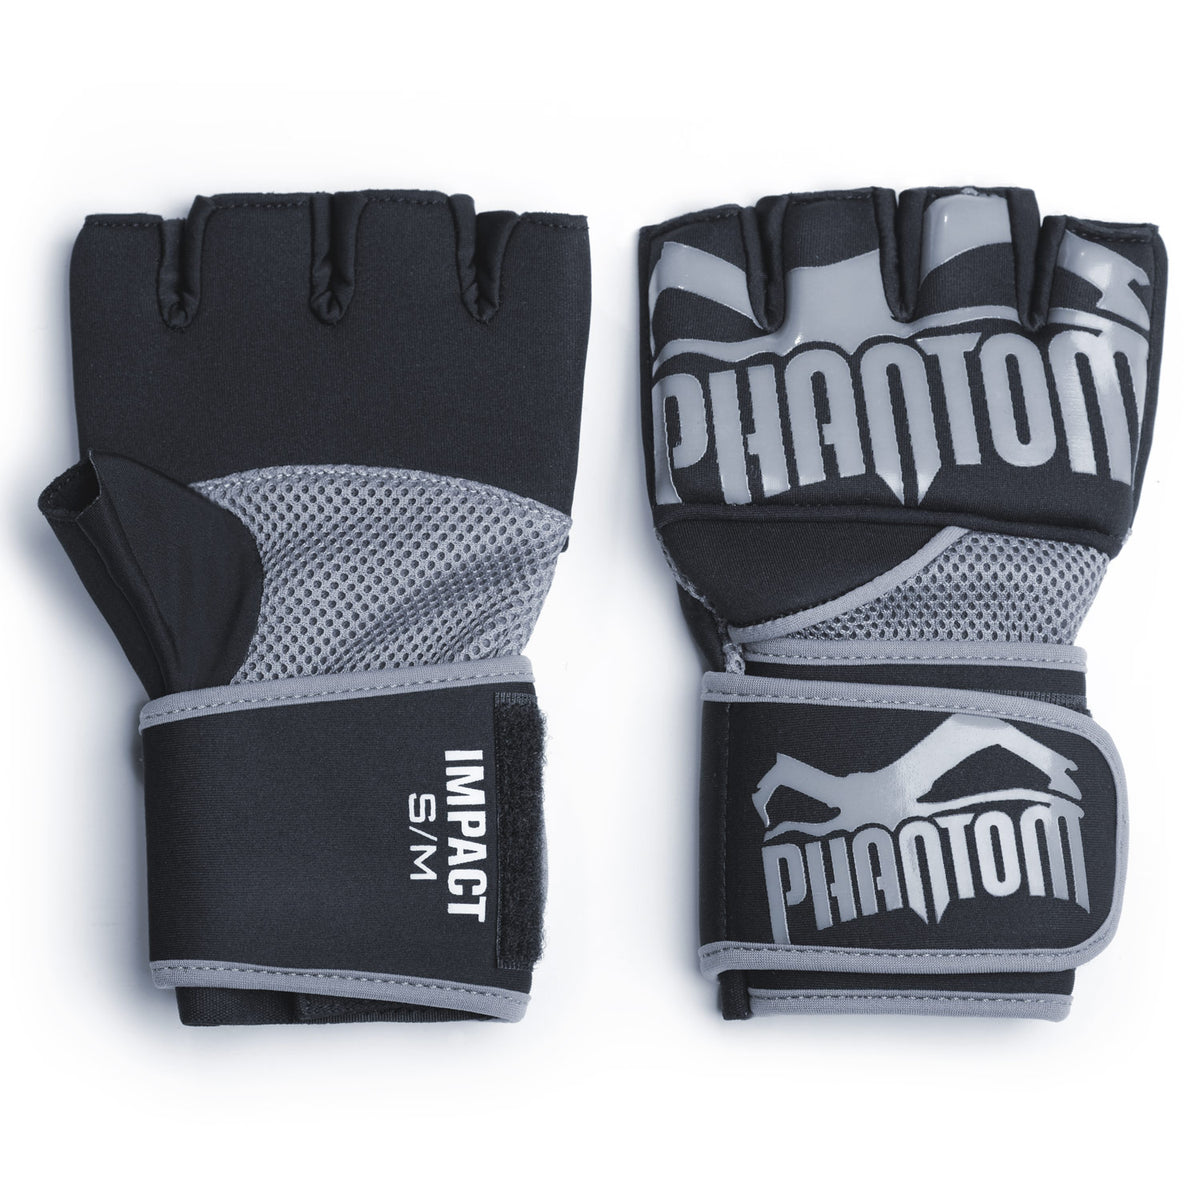 Die Phantom Gel Neopren Handschuhe für dein Kampfsporttraining. Produziert aus hochwertigem Neopren und Silikon.